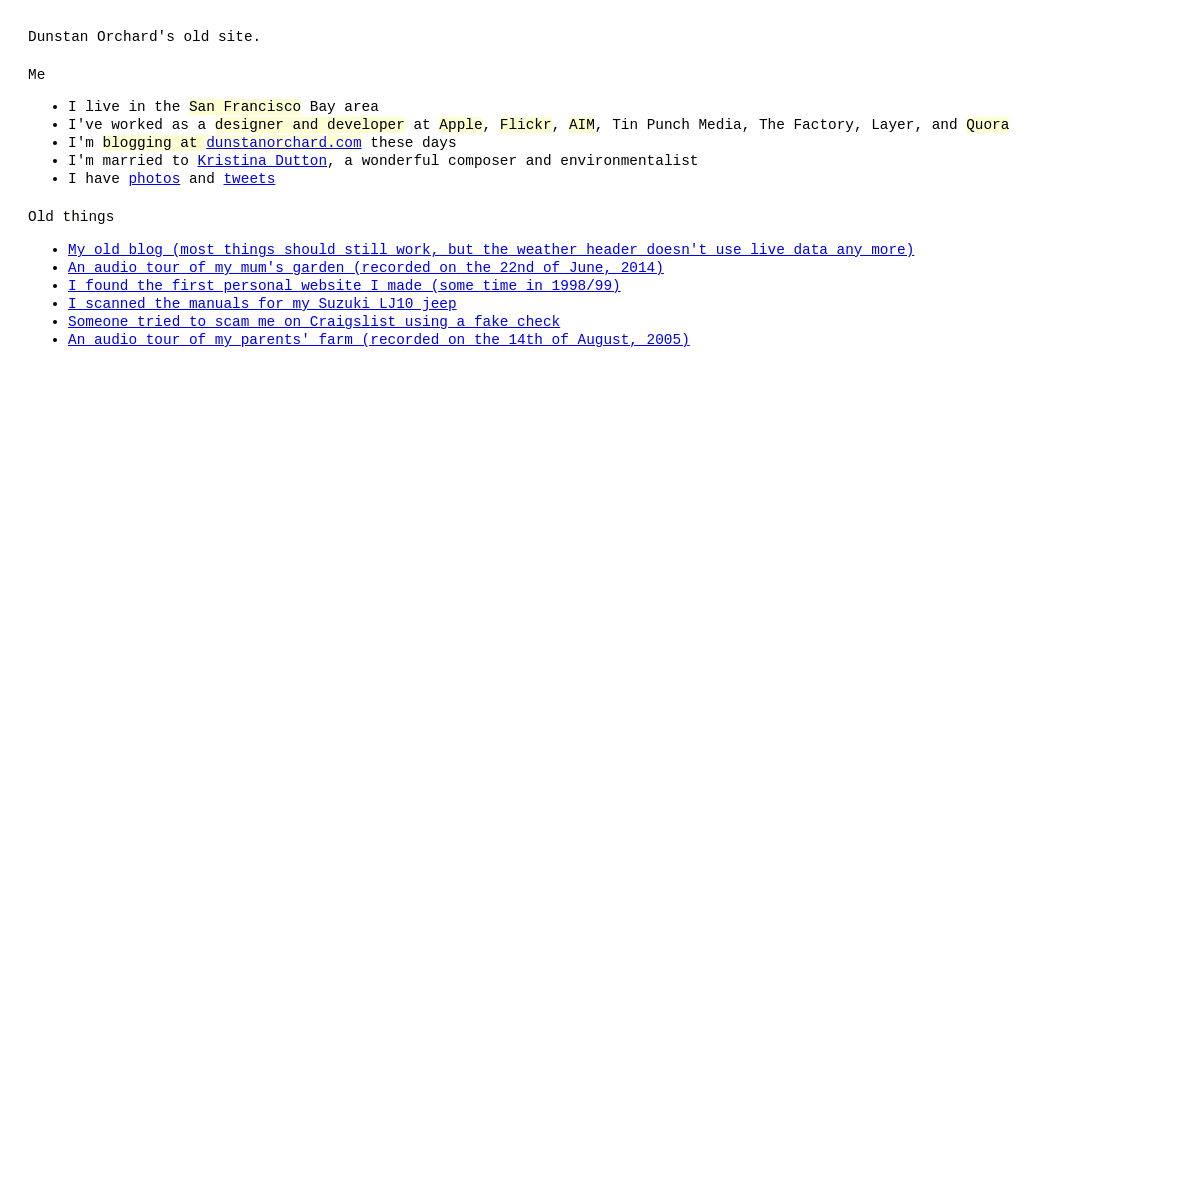 A complete backup of https://1976design.com